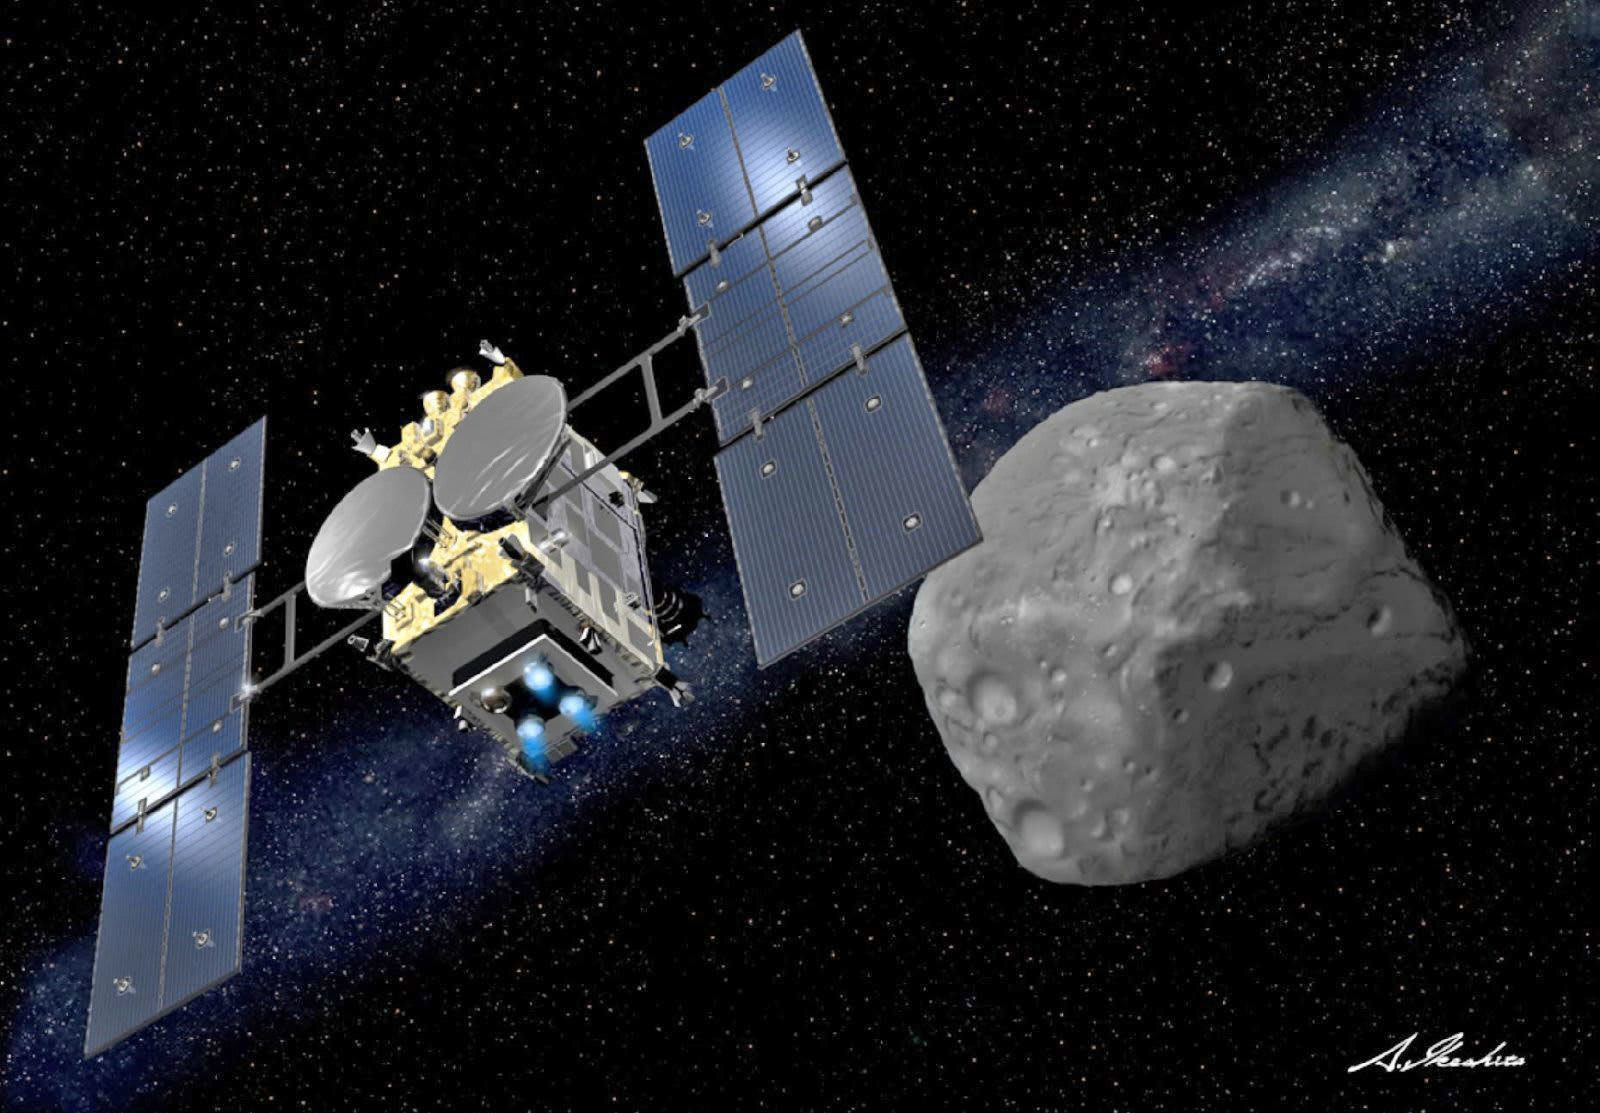 はやぶさ2 小惑星リュウグウのサンプル採取に向け降下開始決定 2月22日タッチダウンへgo Engadget 日本版